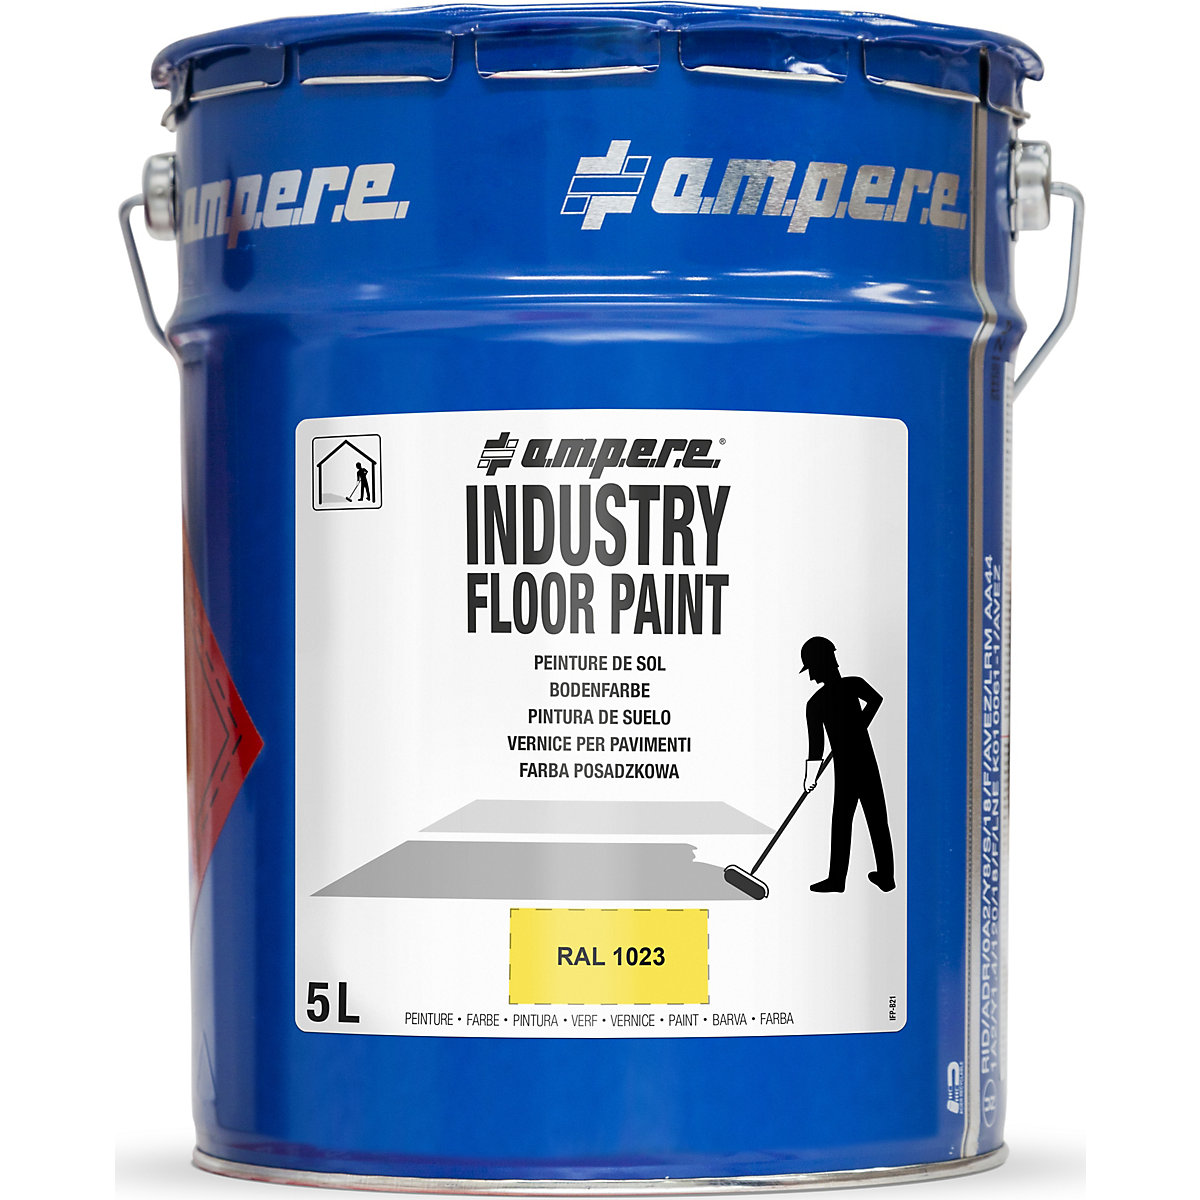 Vopsea pentru marcarea podelelor Industry Floor Paint® – Ampere